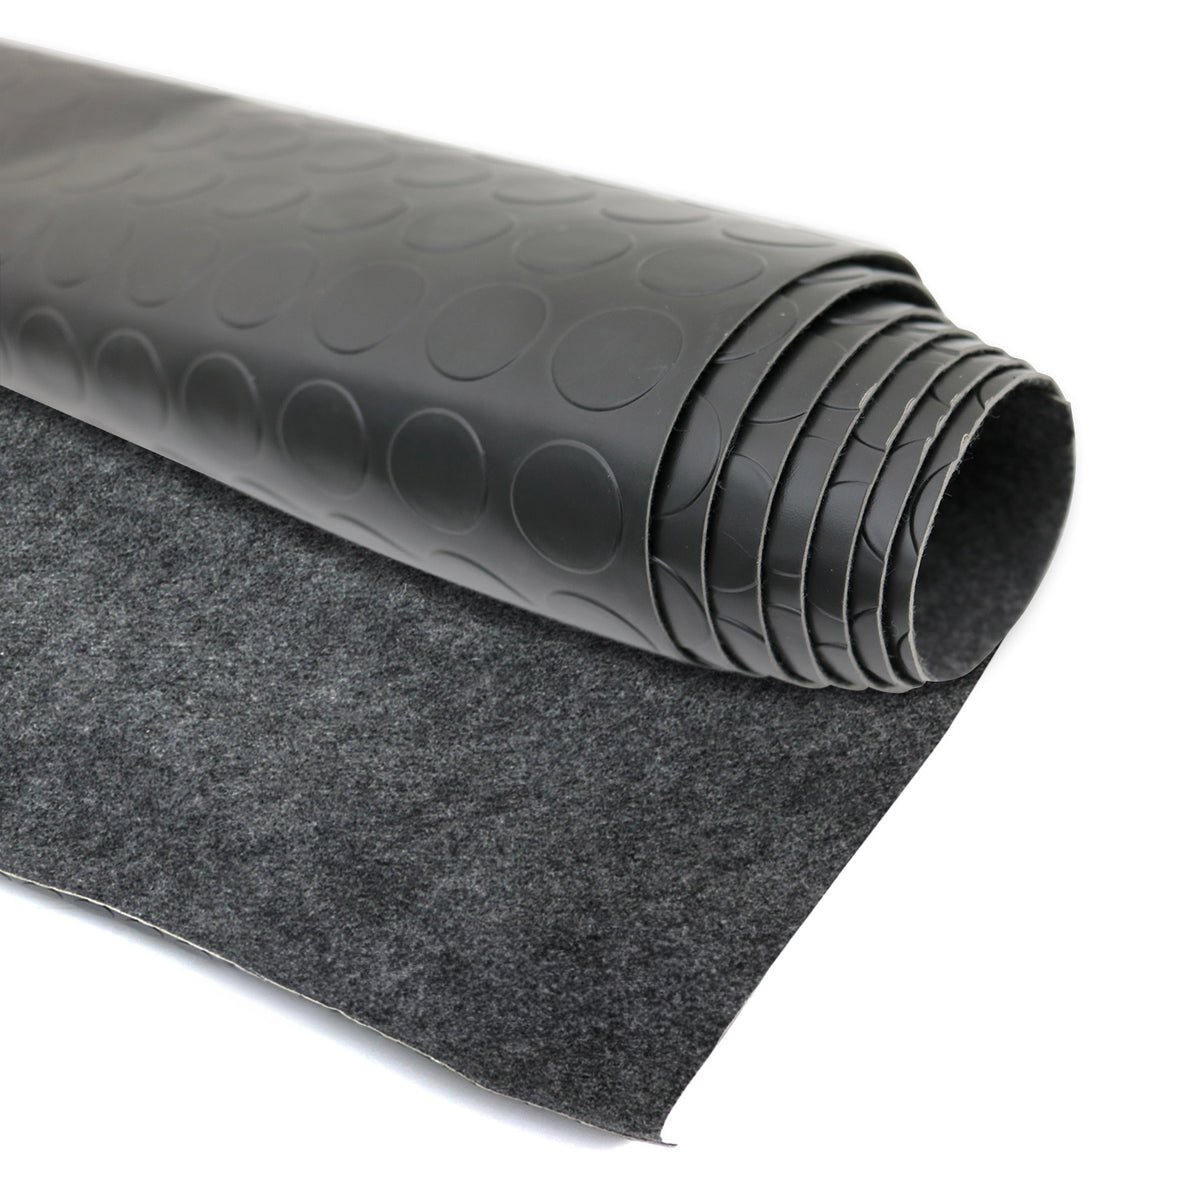 Anti-slip mat rubber mat floor covering knobs 300 x 200 cm black